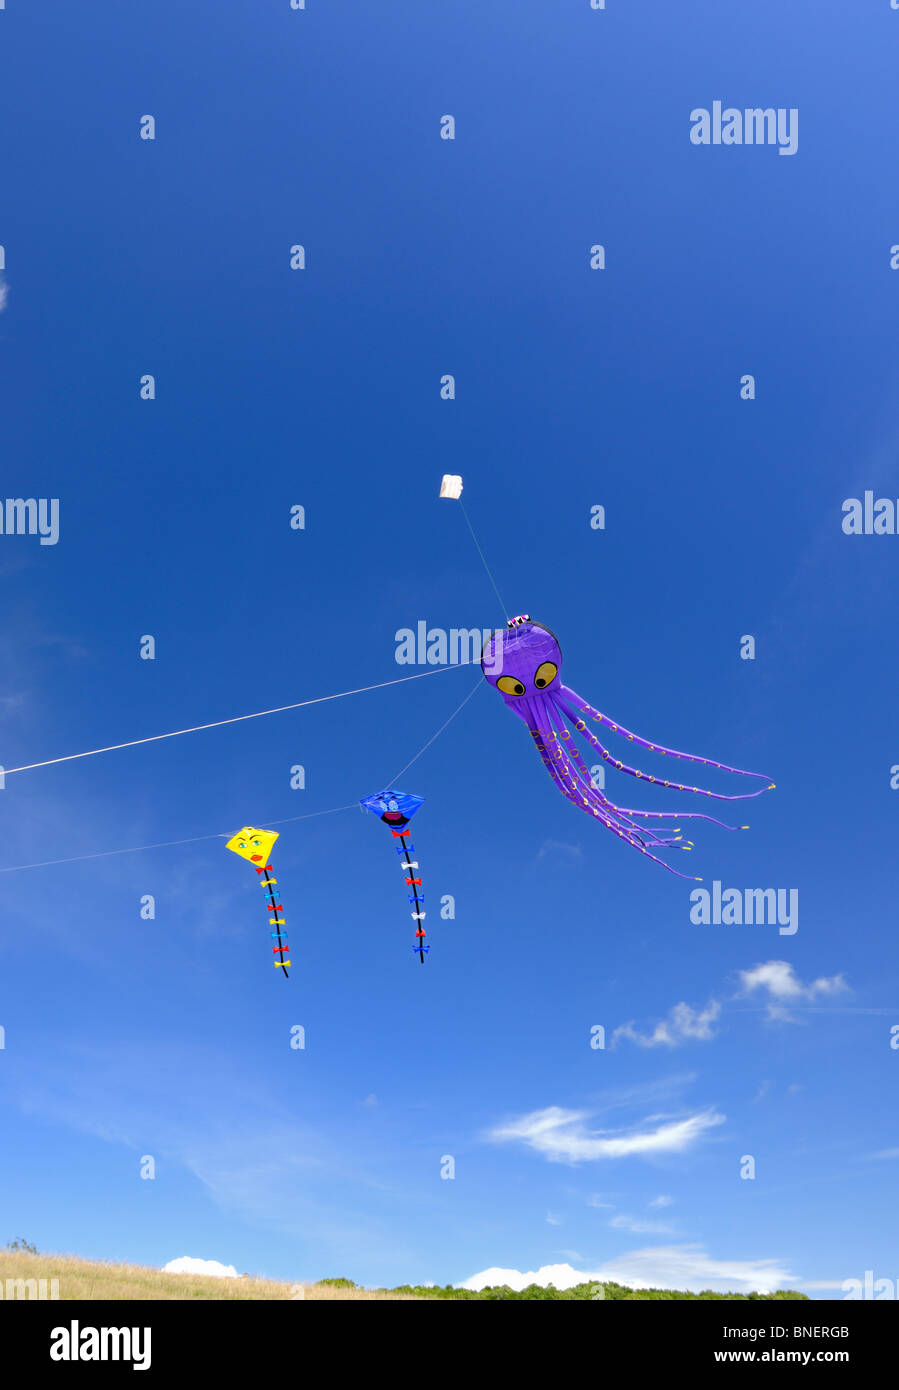 Three cartoon kites flying Stock Photo